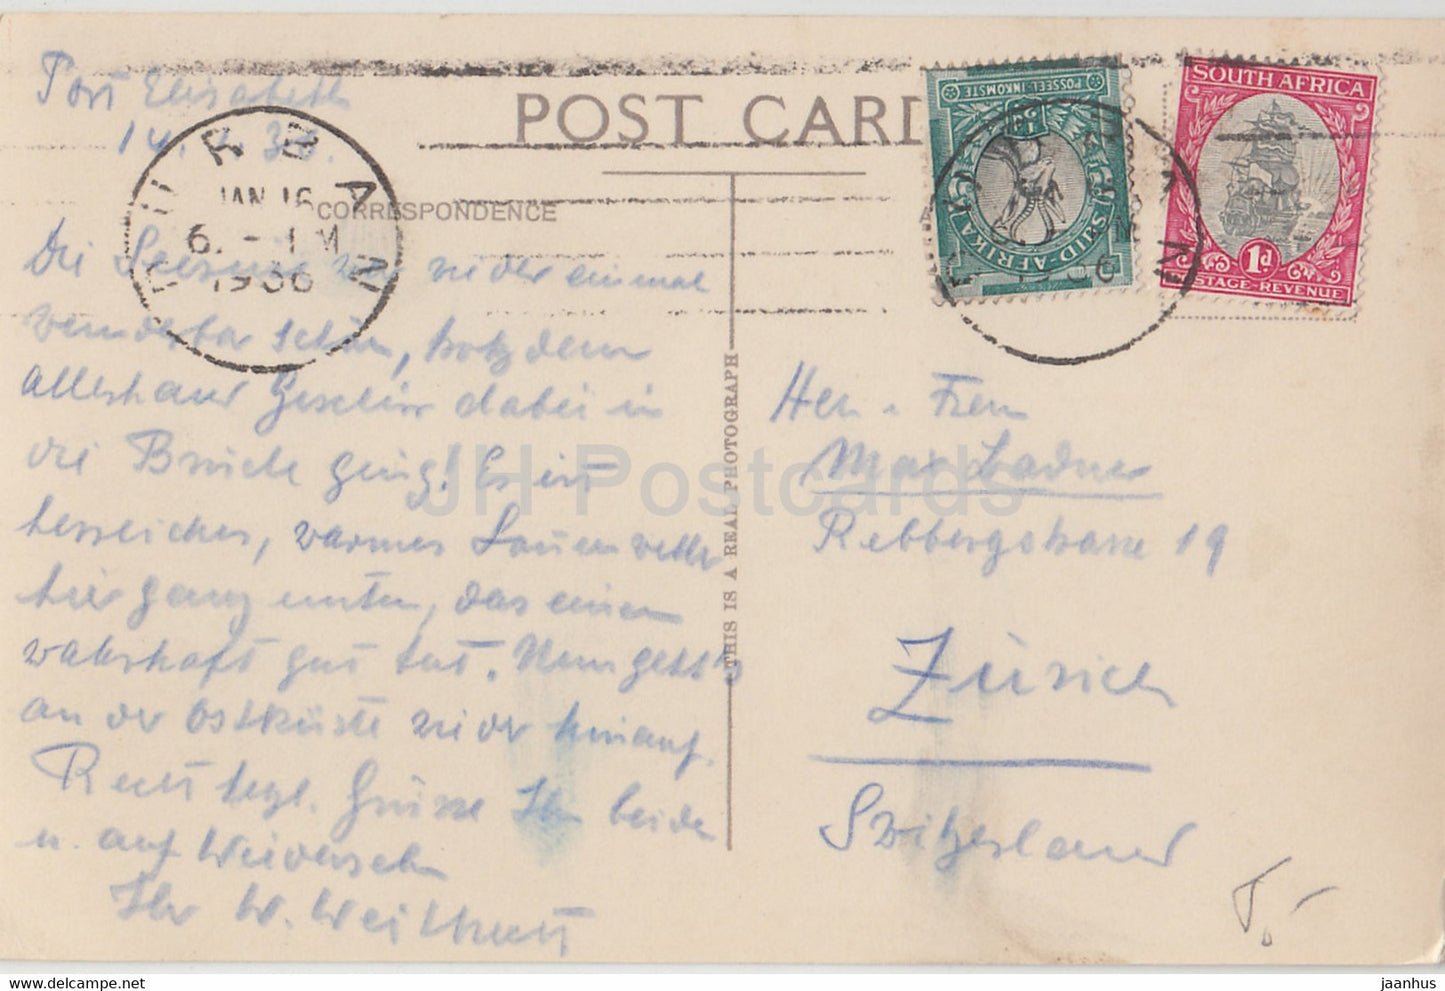 Port Elizabeth - The Union's Snake Park - carte postale ancienne - 1936 - Afrique du Sud - utilisé